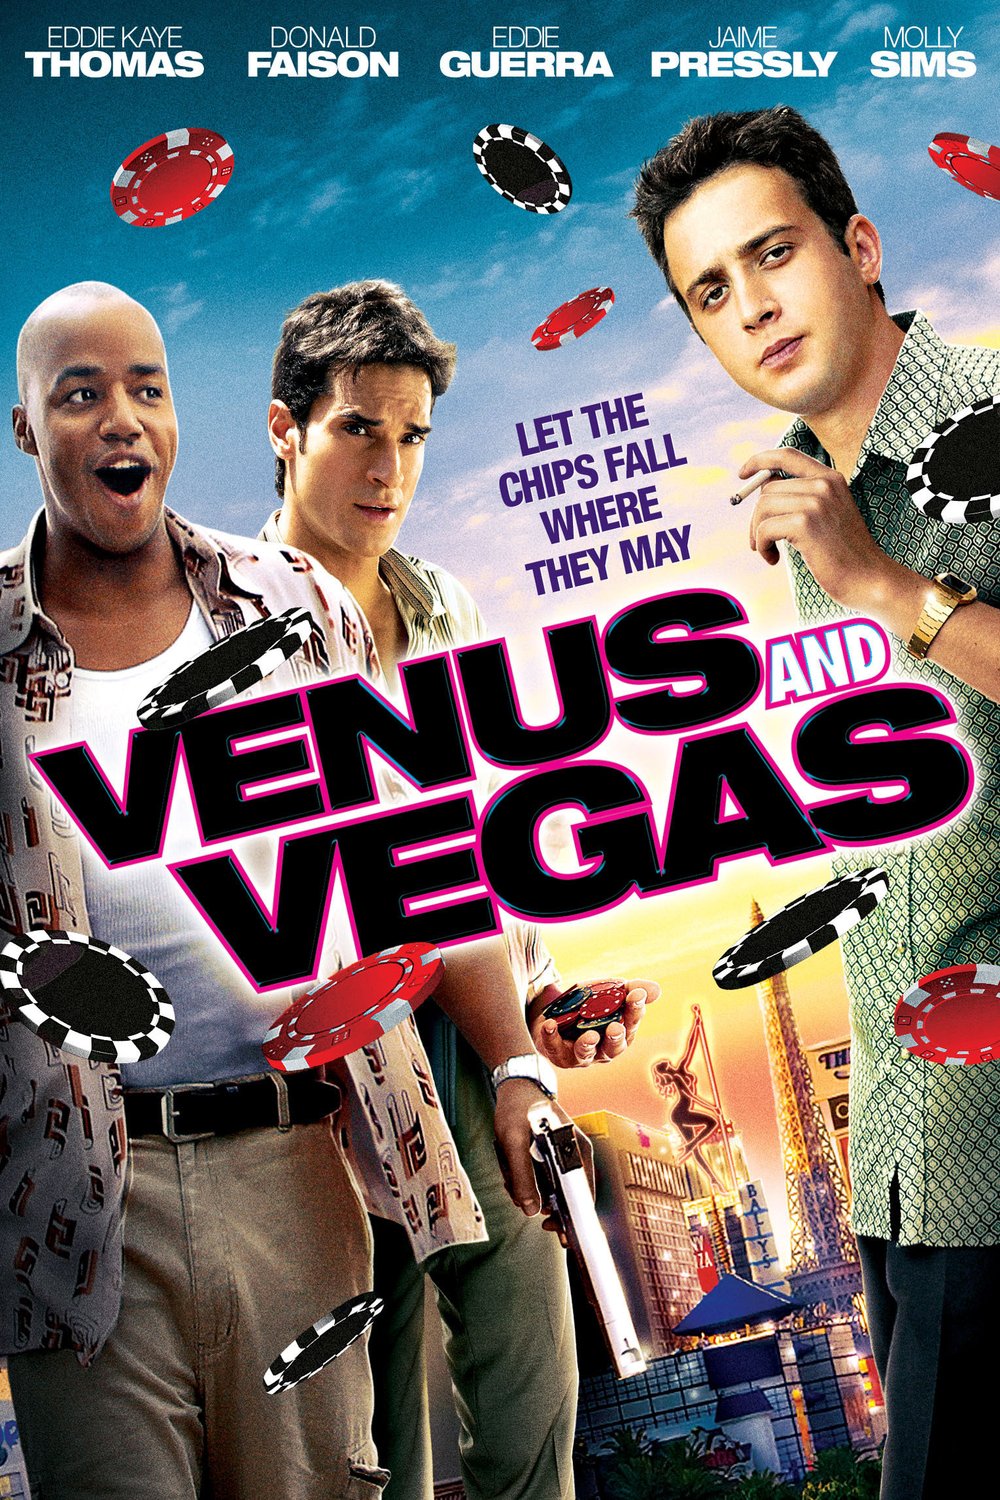 Poster of the movie Venus & Vegas